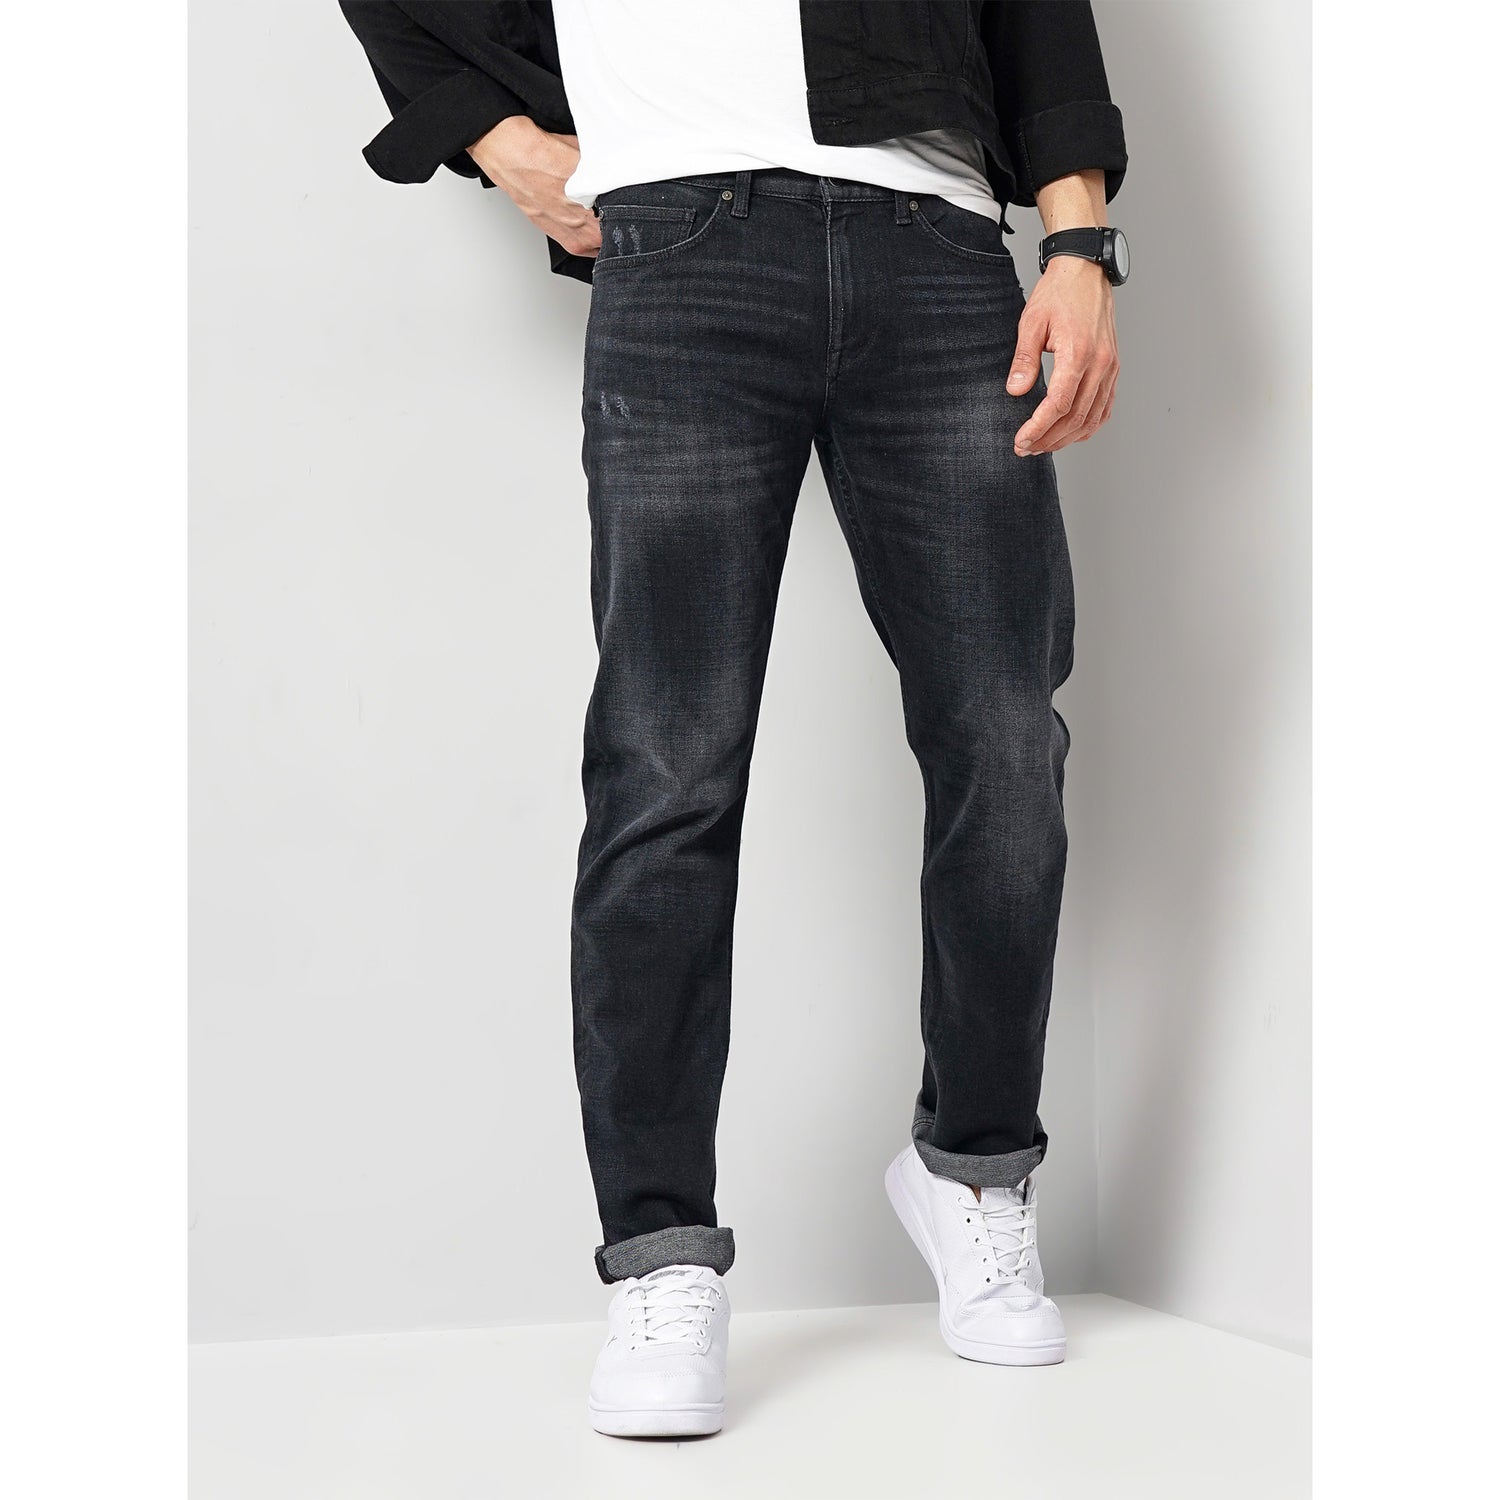 Men's Black Cotton-Blend Solid Regular Jeans (COFLEXI)